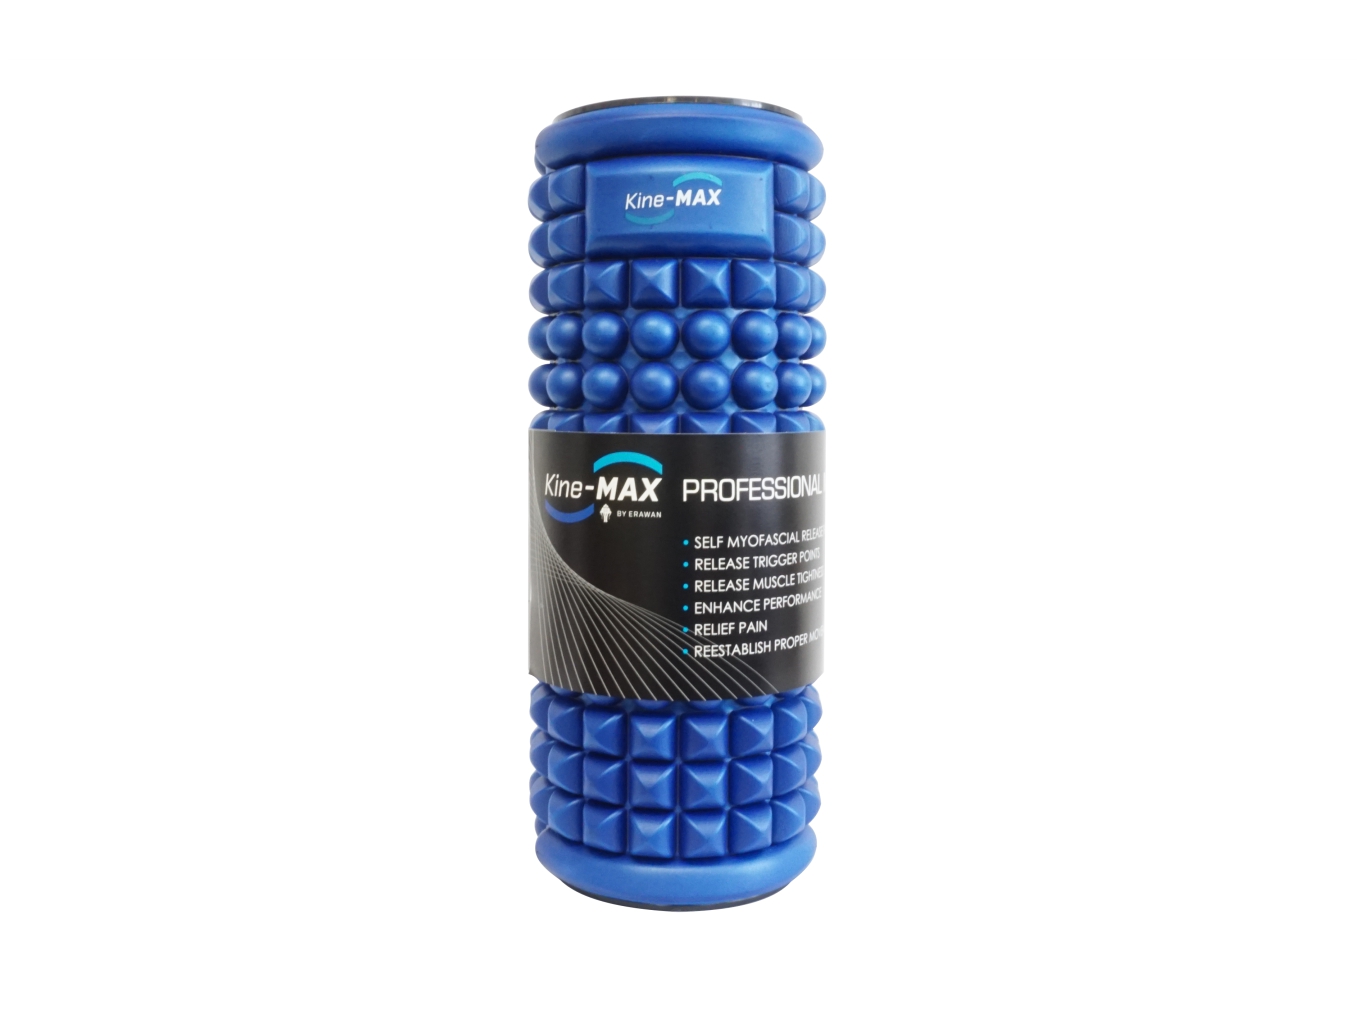 Kine-MAX Professional Massage Foam Roller - masážní válec - modrý